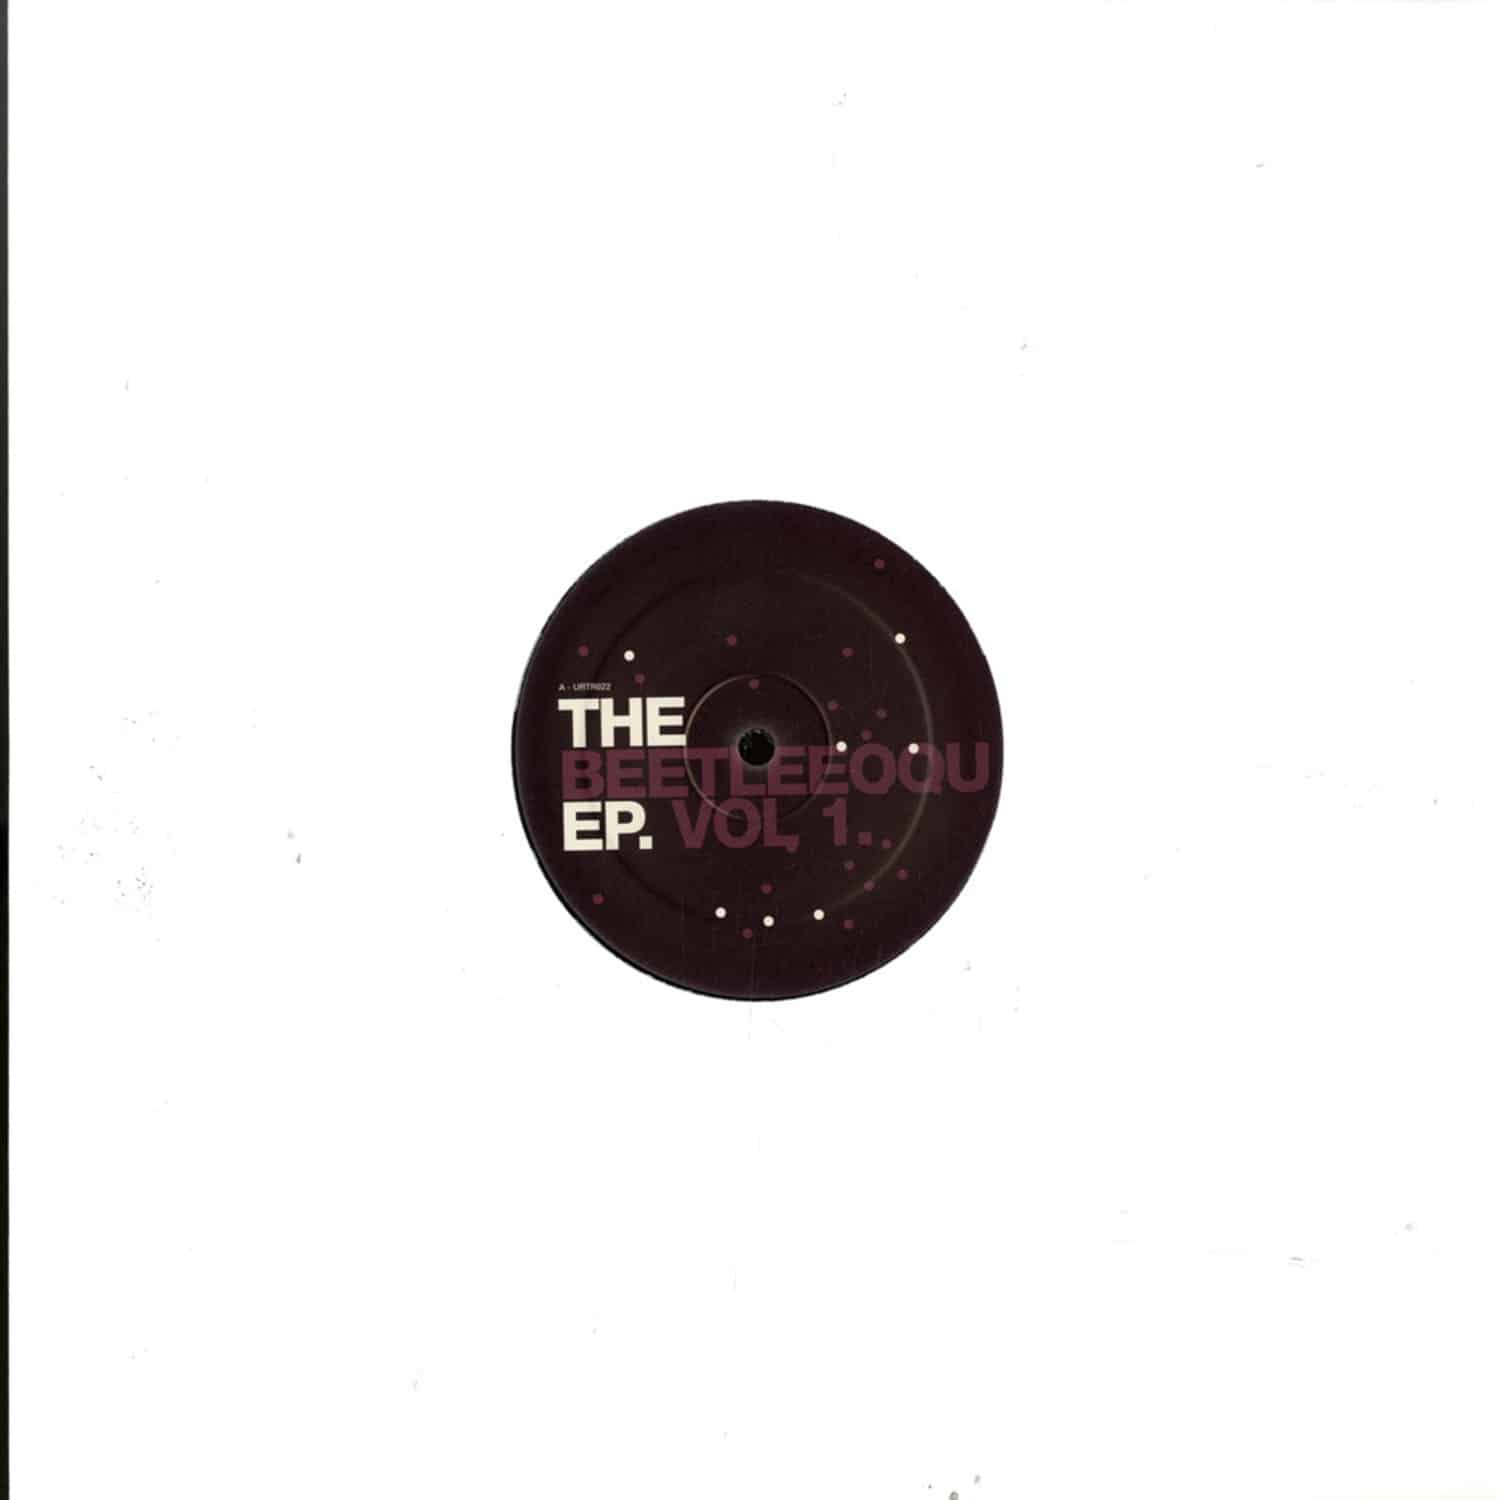 Chris Udoh - THE BEETLEEOOU EP VOL. 1